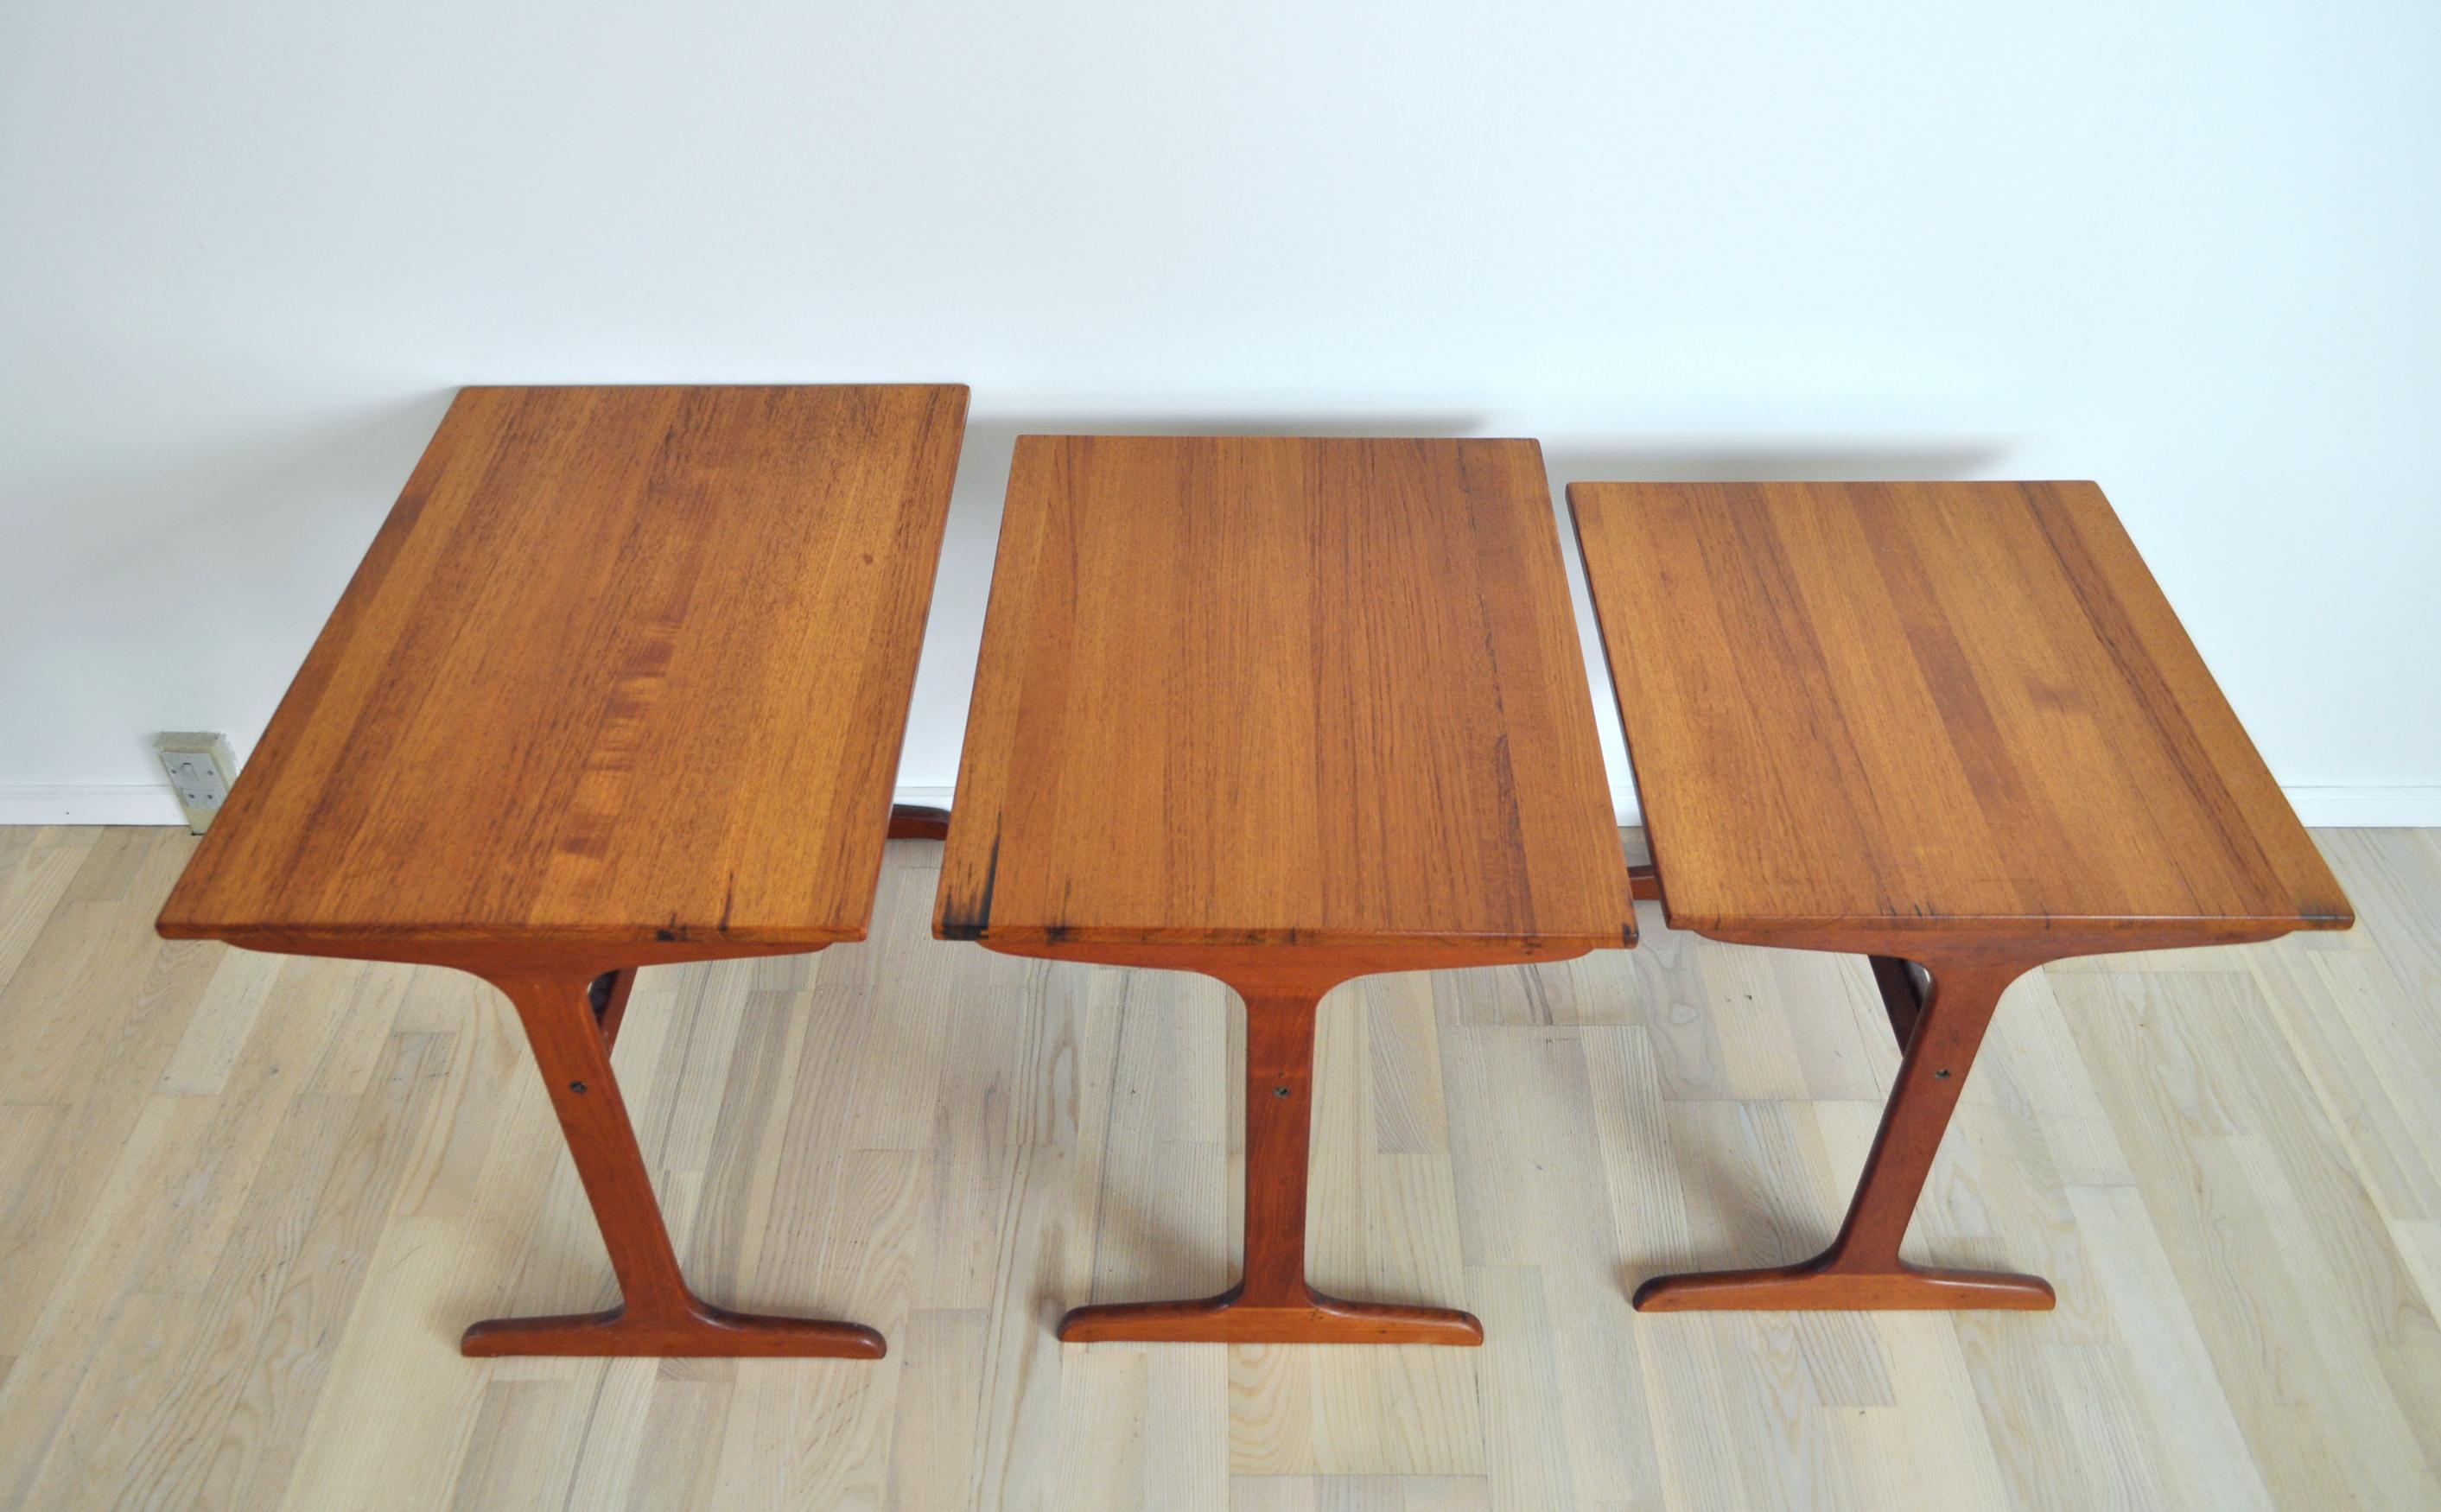 Scandinavian Modern Cabinetmaker Nesting Tables in Solid Teak, Denmark, 1960s For Sale 2